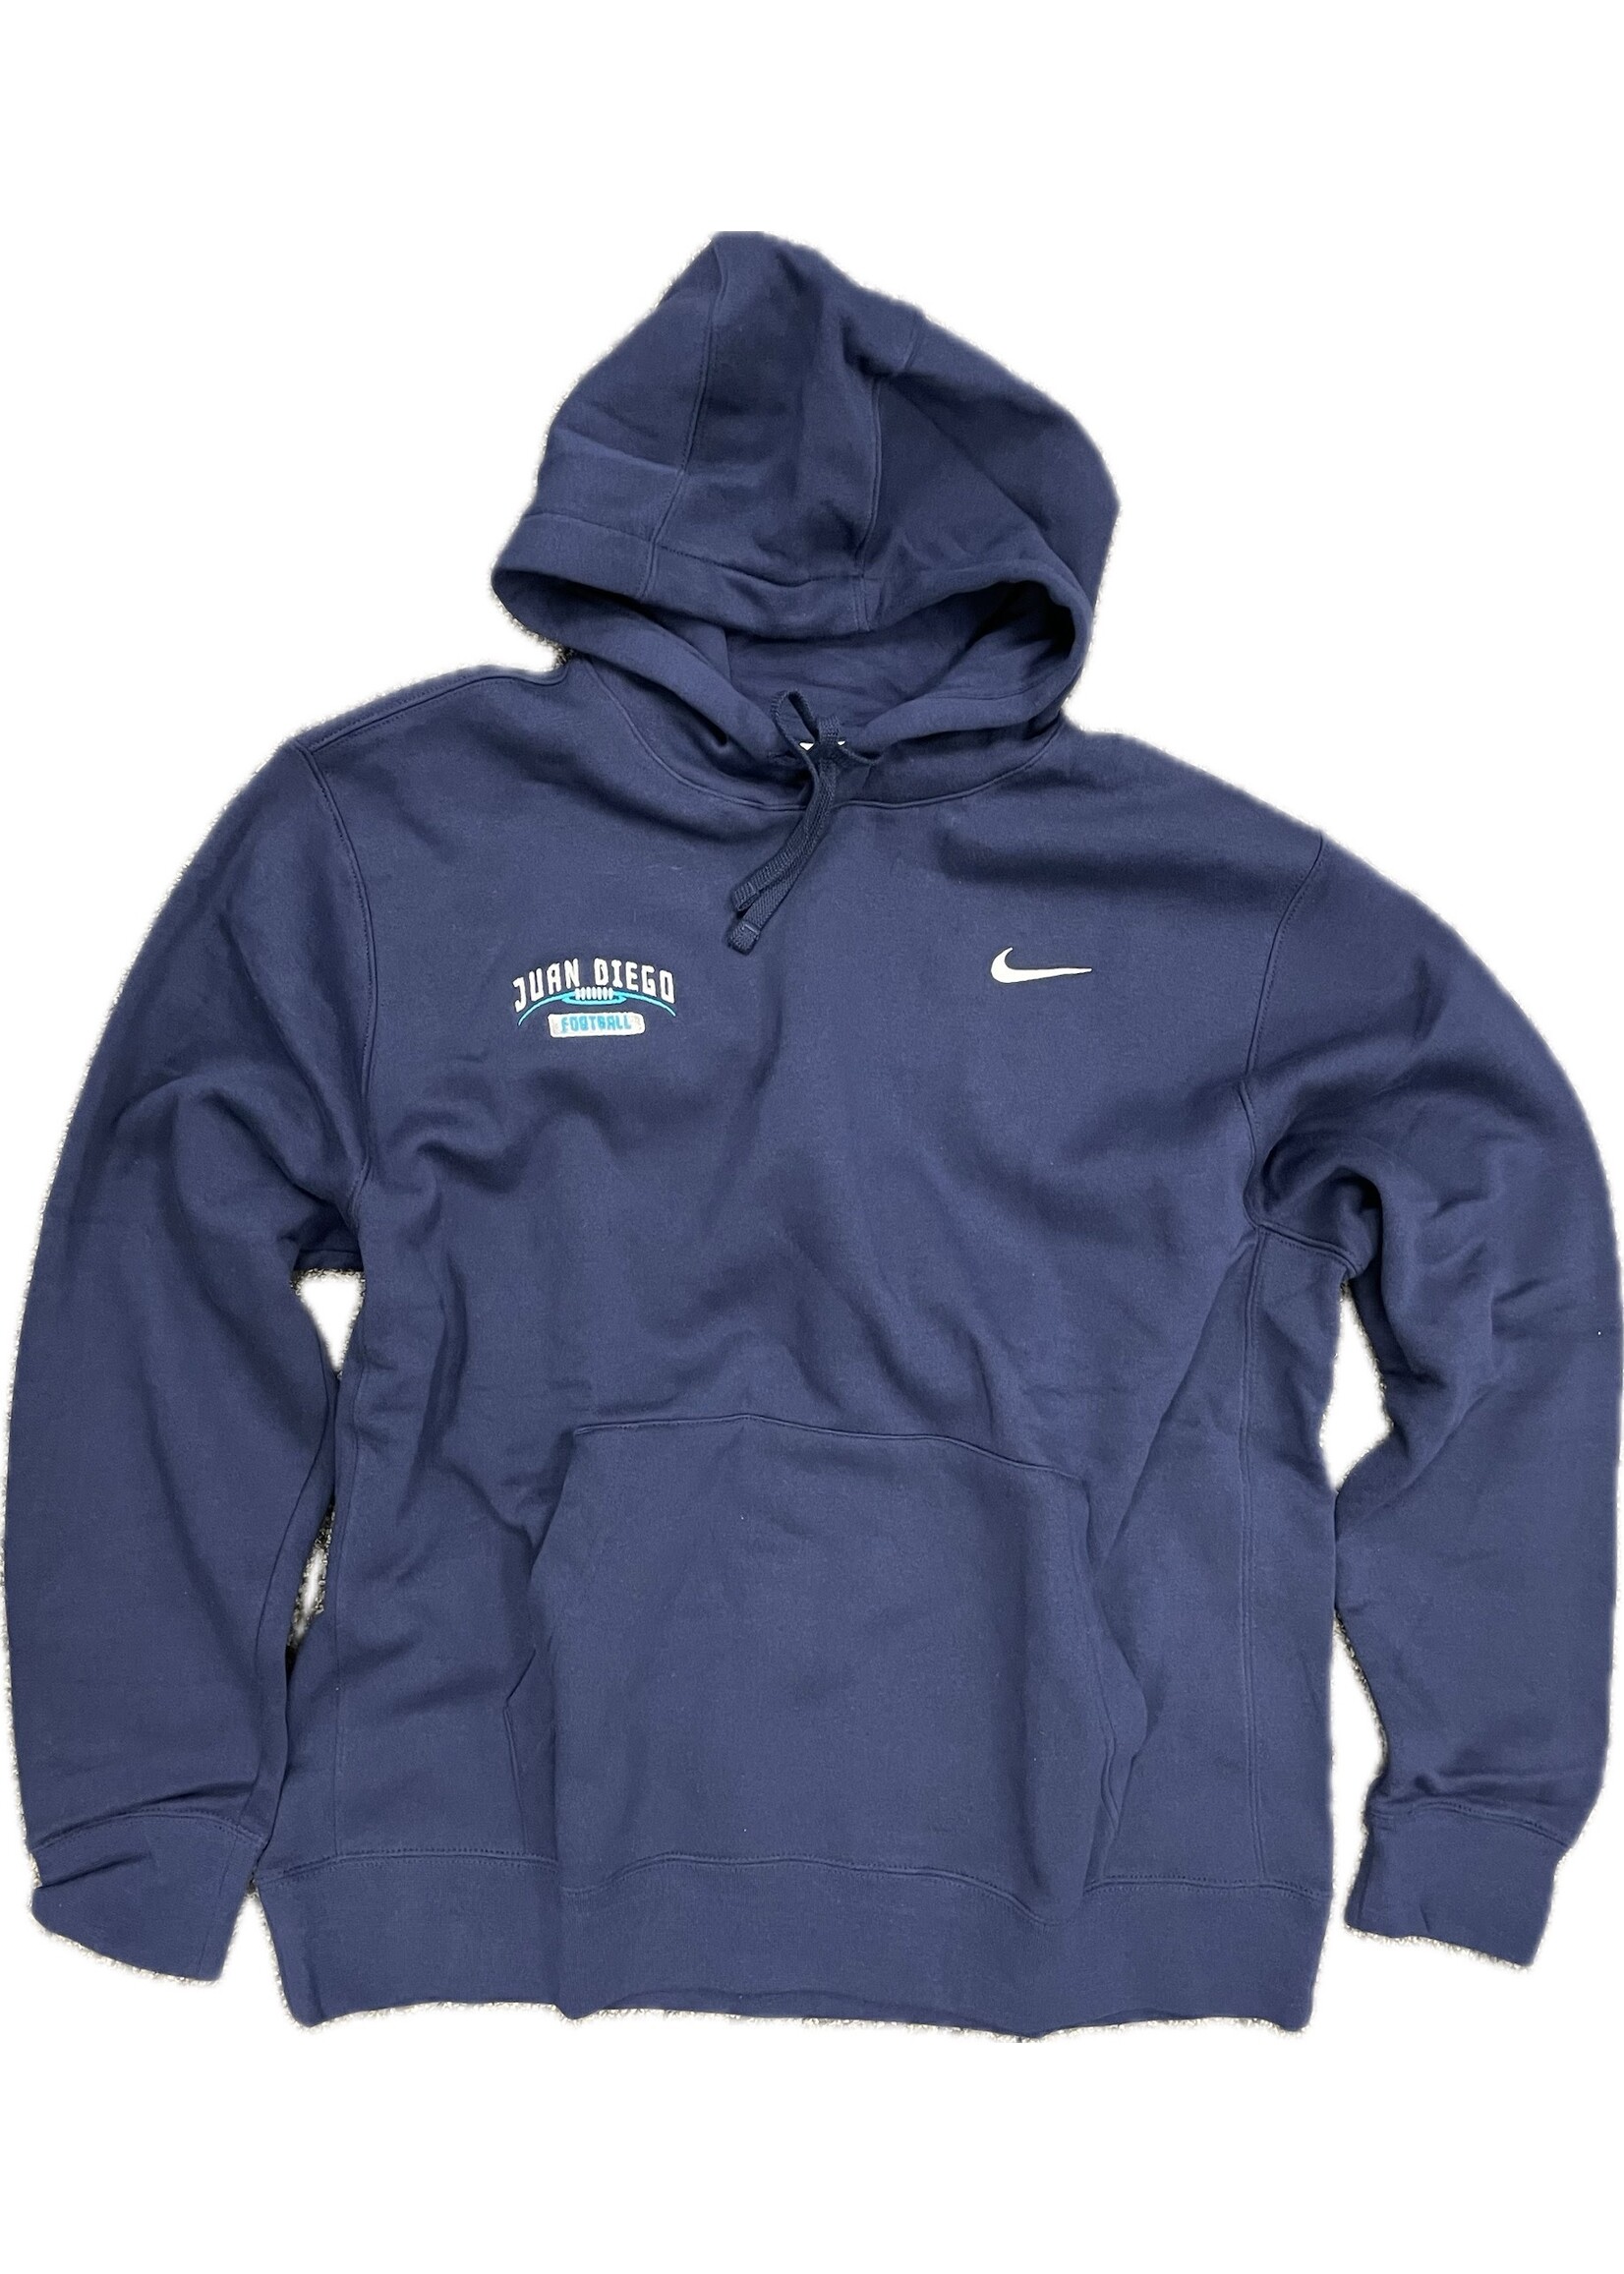 NON-UNIFORM Juan Diego Football Nike Sweatshirt Navy Hood